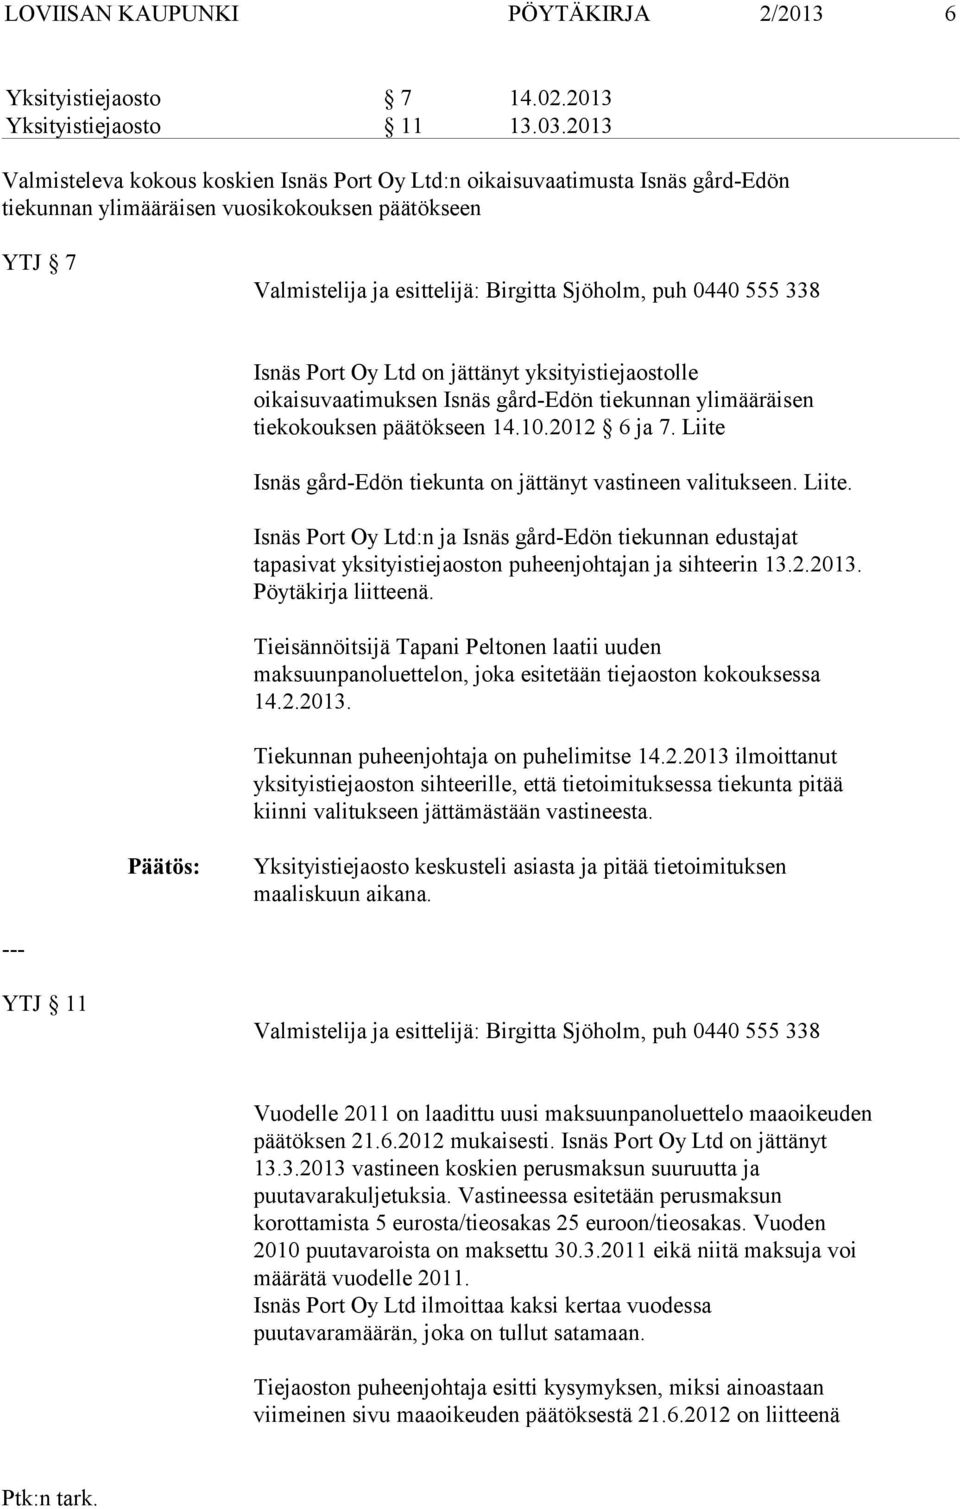 oikaisuvaatimuksen Isnäs gård-edön tiekunnan ylimääräisen tiekokouksen päätökseen 14.10.2012 6 ja 7. Liite 